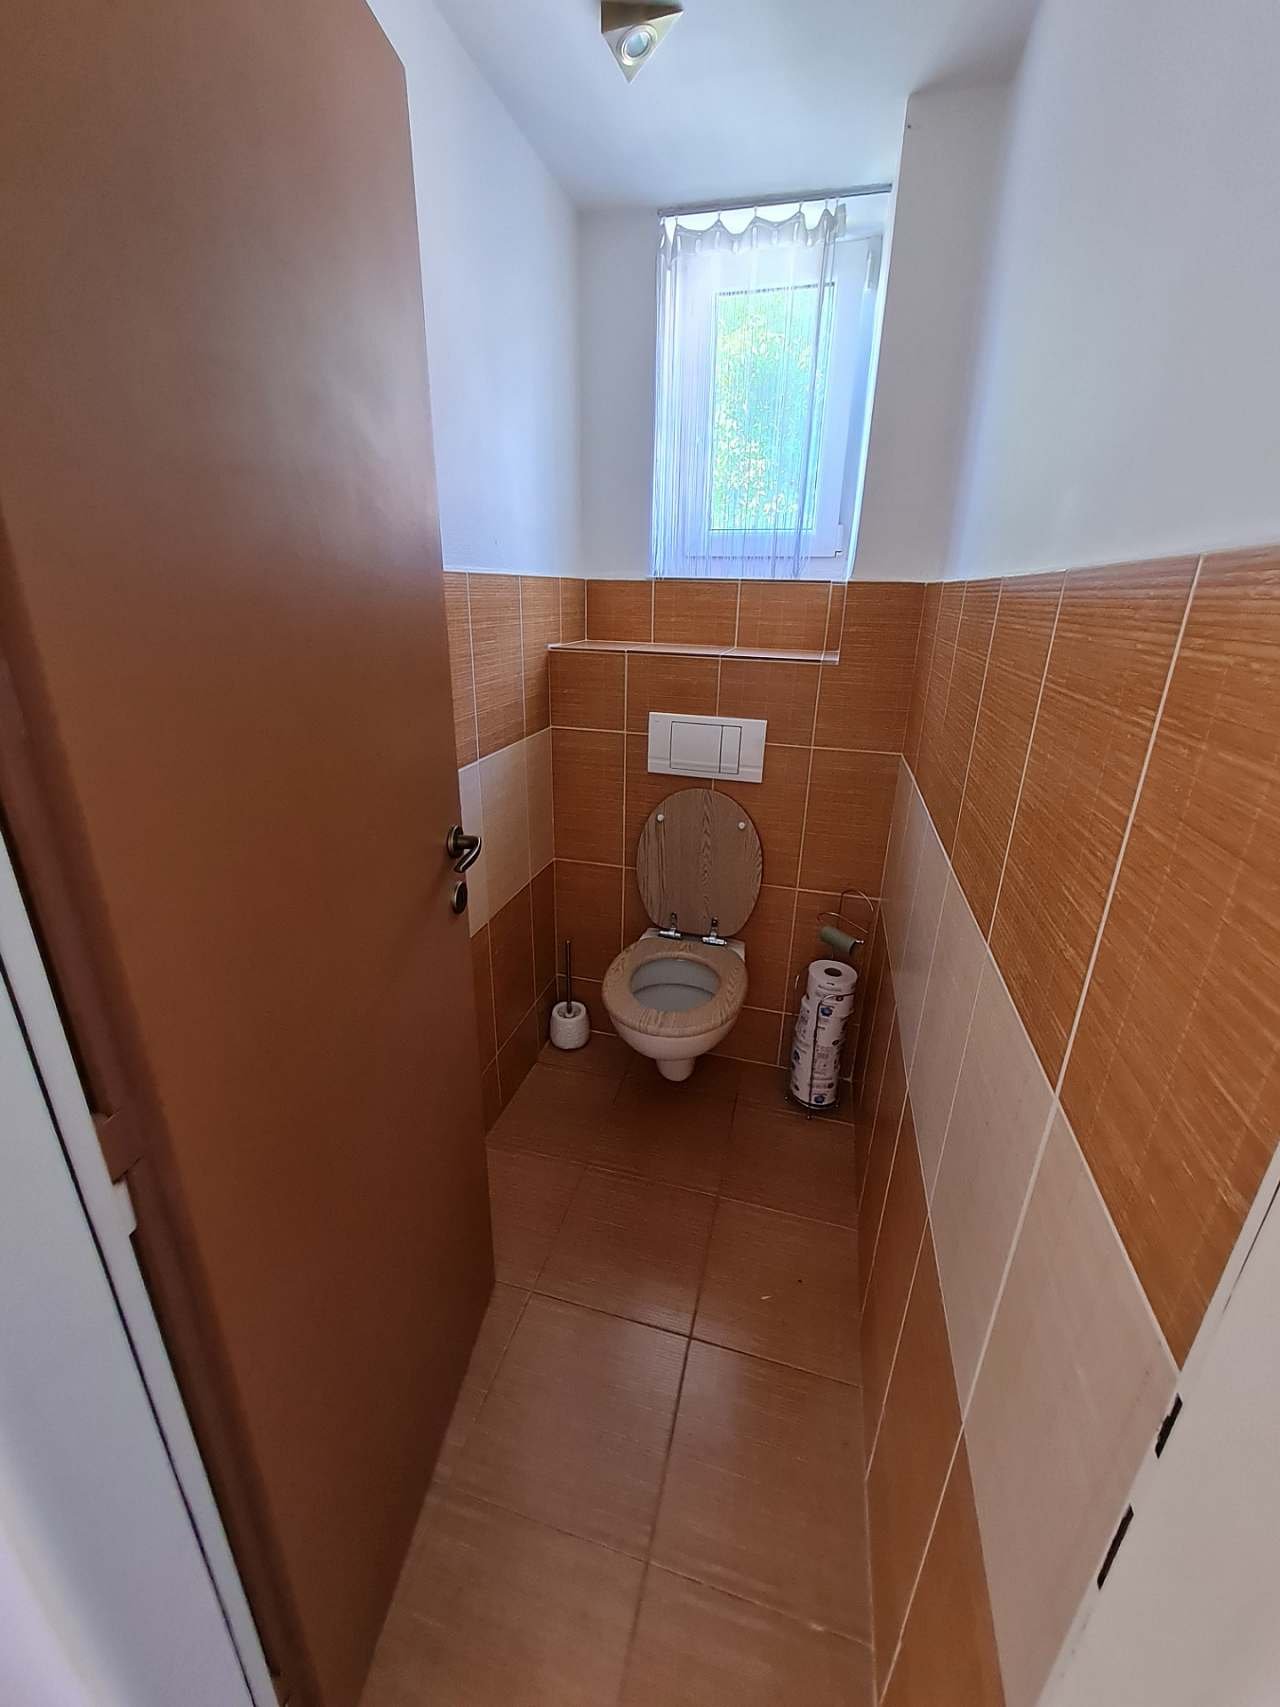 WC dolní apartmán